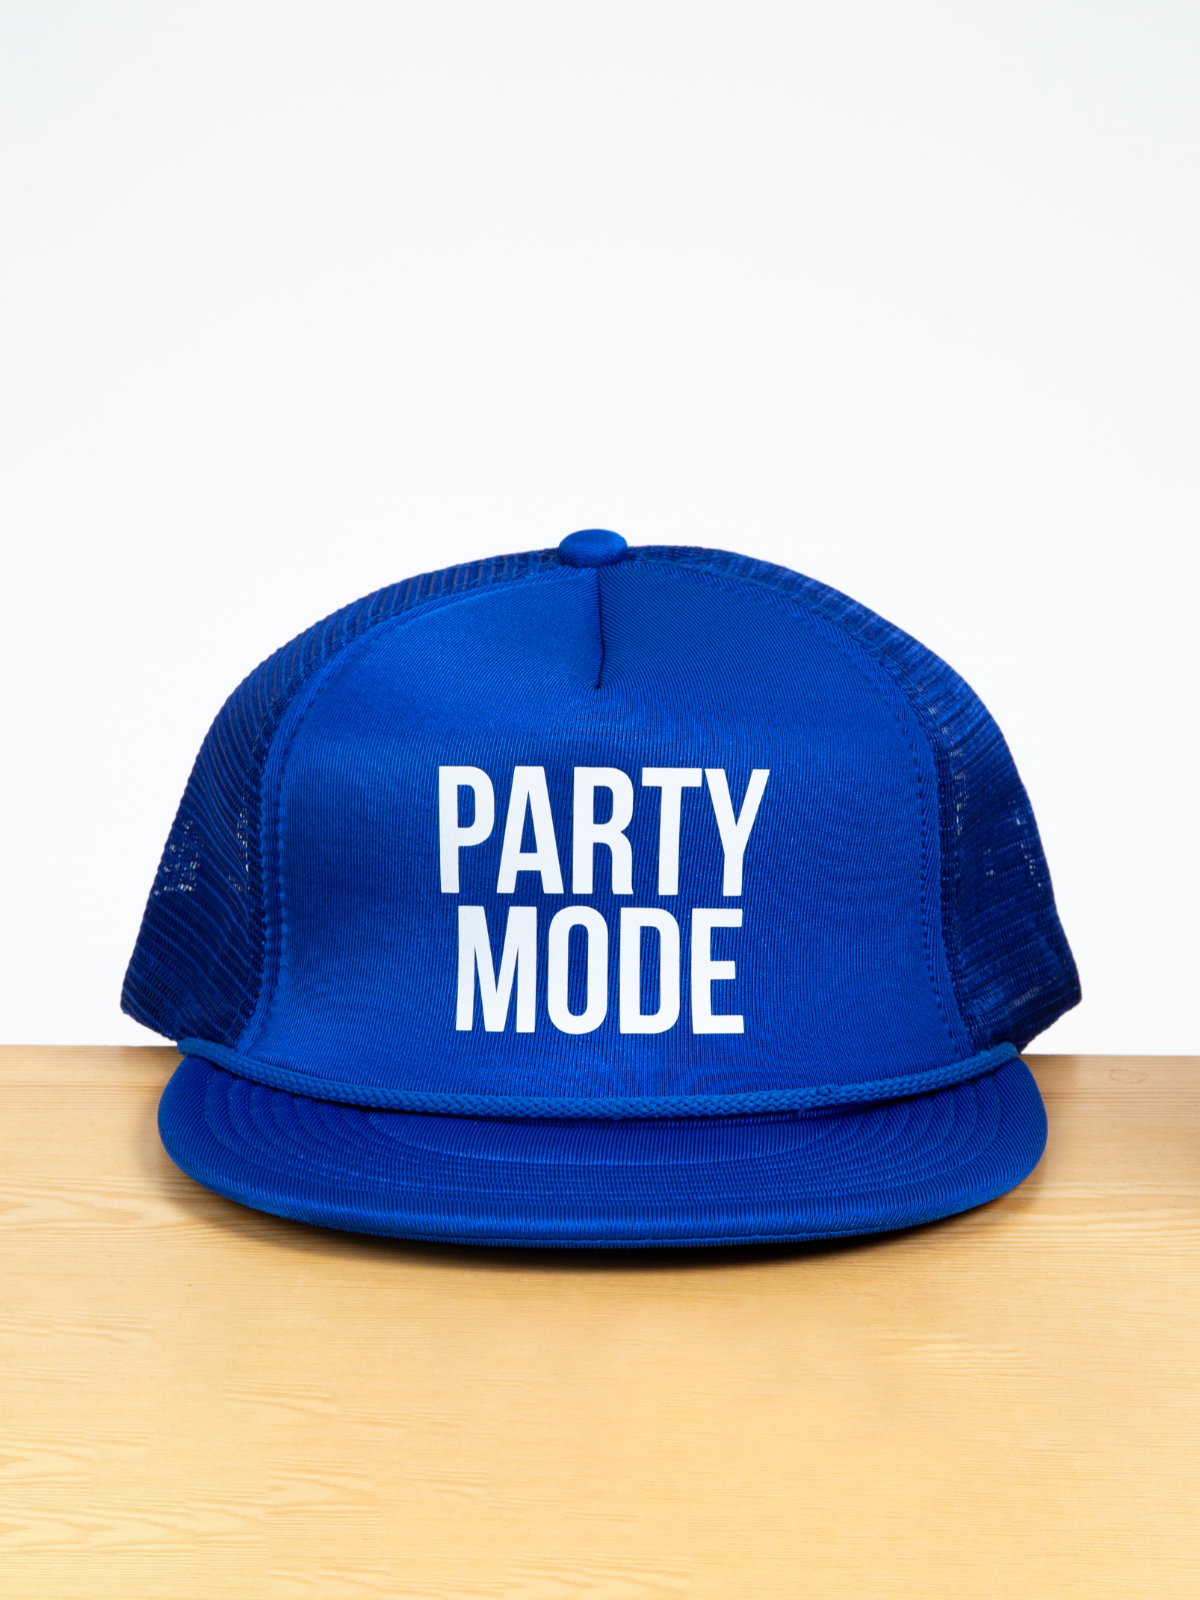 Party mode blue trucker hat front Dustin Lynch